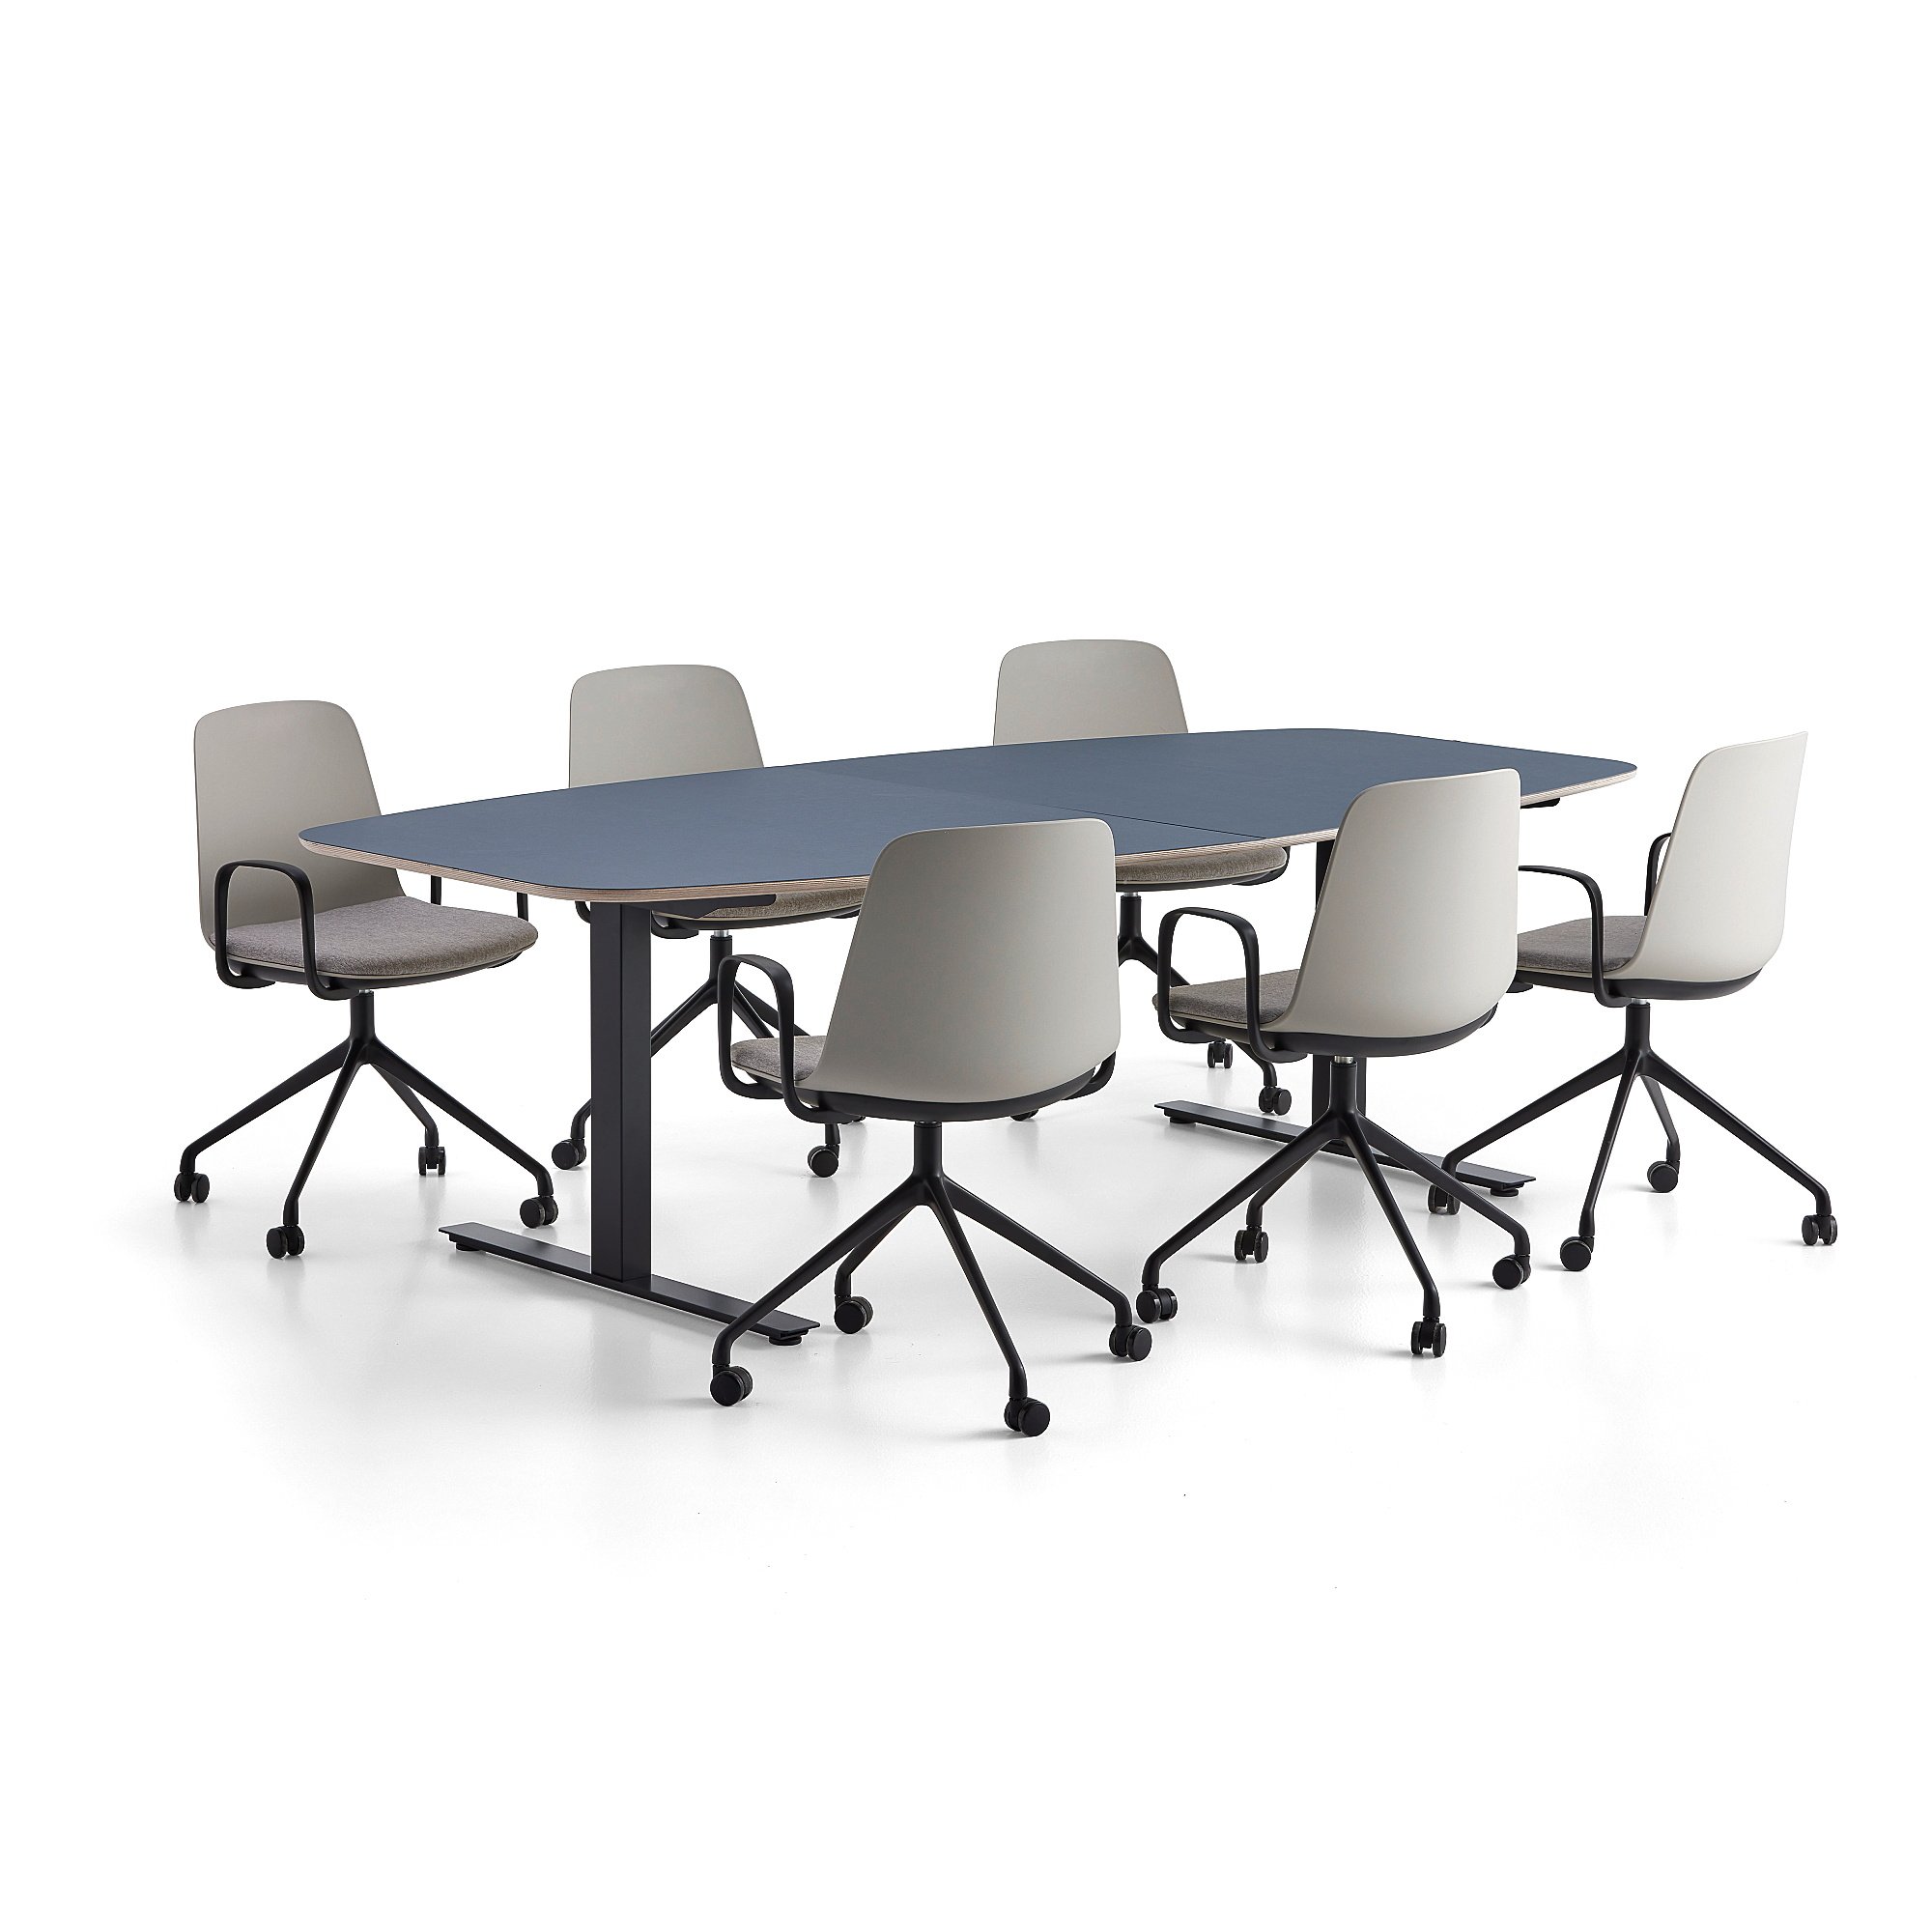 Rokovací nábytok AUDREY + LANGFORD, modrý stôl + 6 stoličiek, svetlošedá